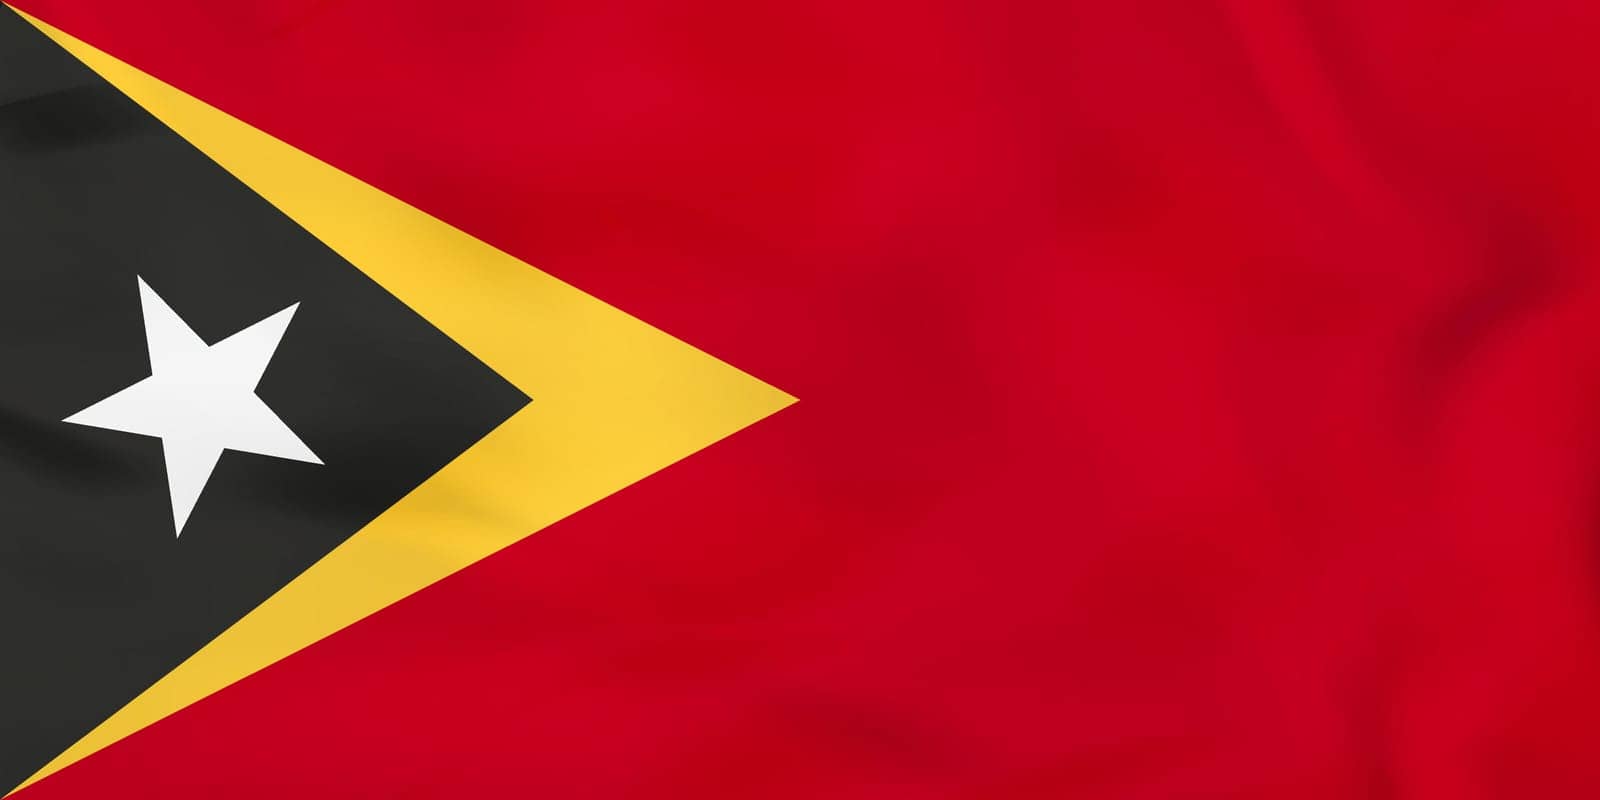 East Timor waving flag. East Timor national flag background texture. by boldg